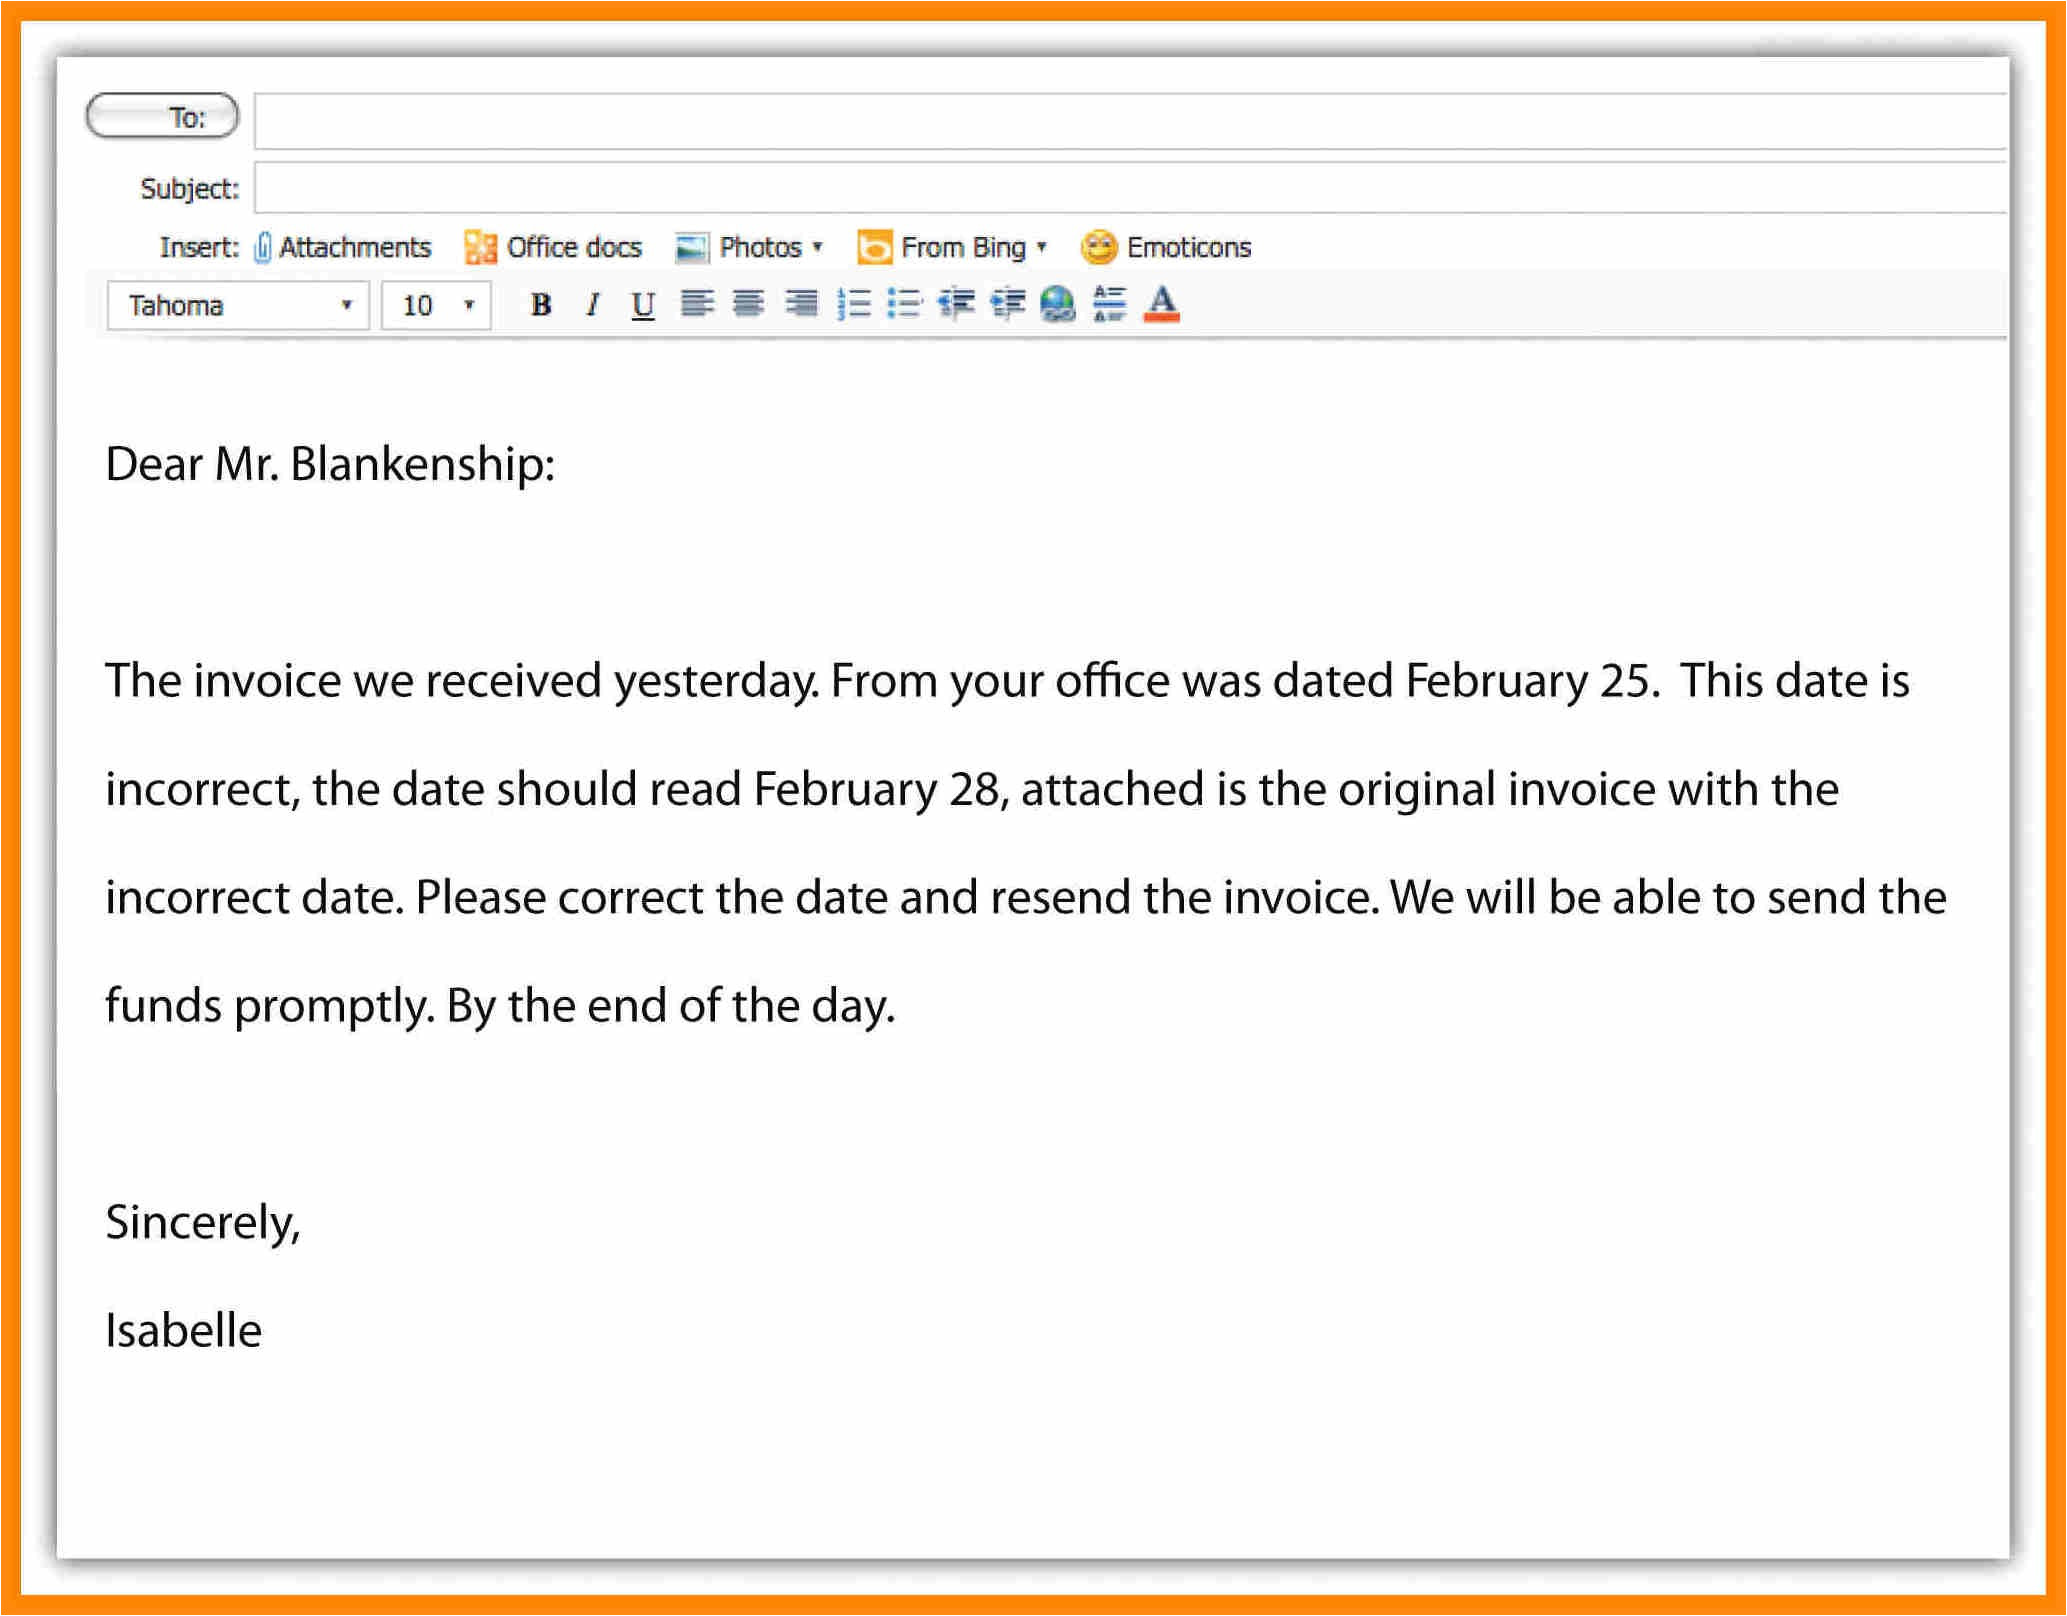 Writing an email. Email example. Writing an email примеры. Пример электронного письма на английском. Business email writing примеры.